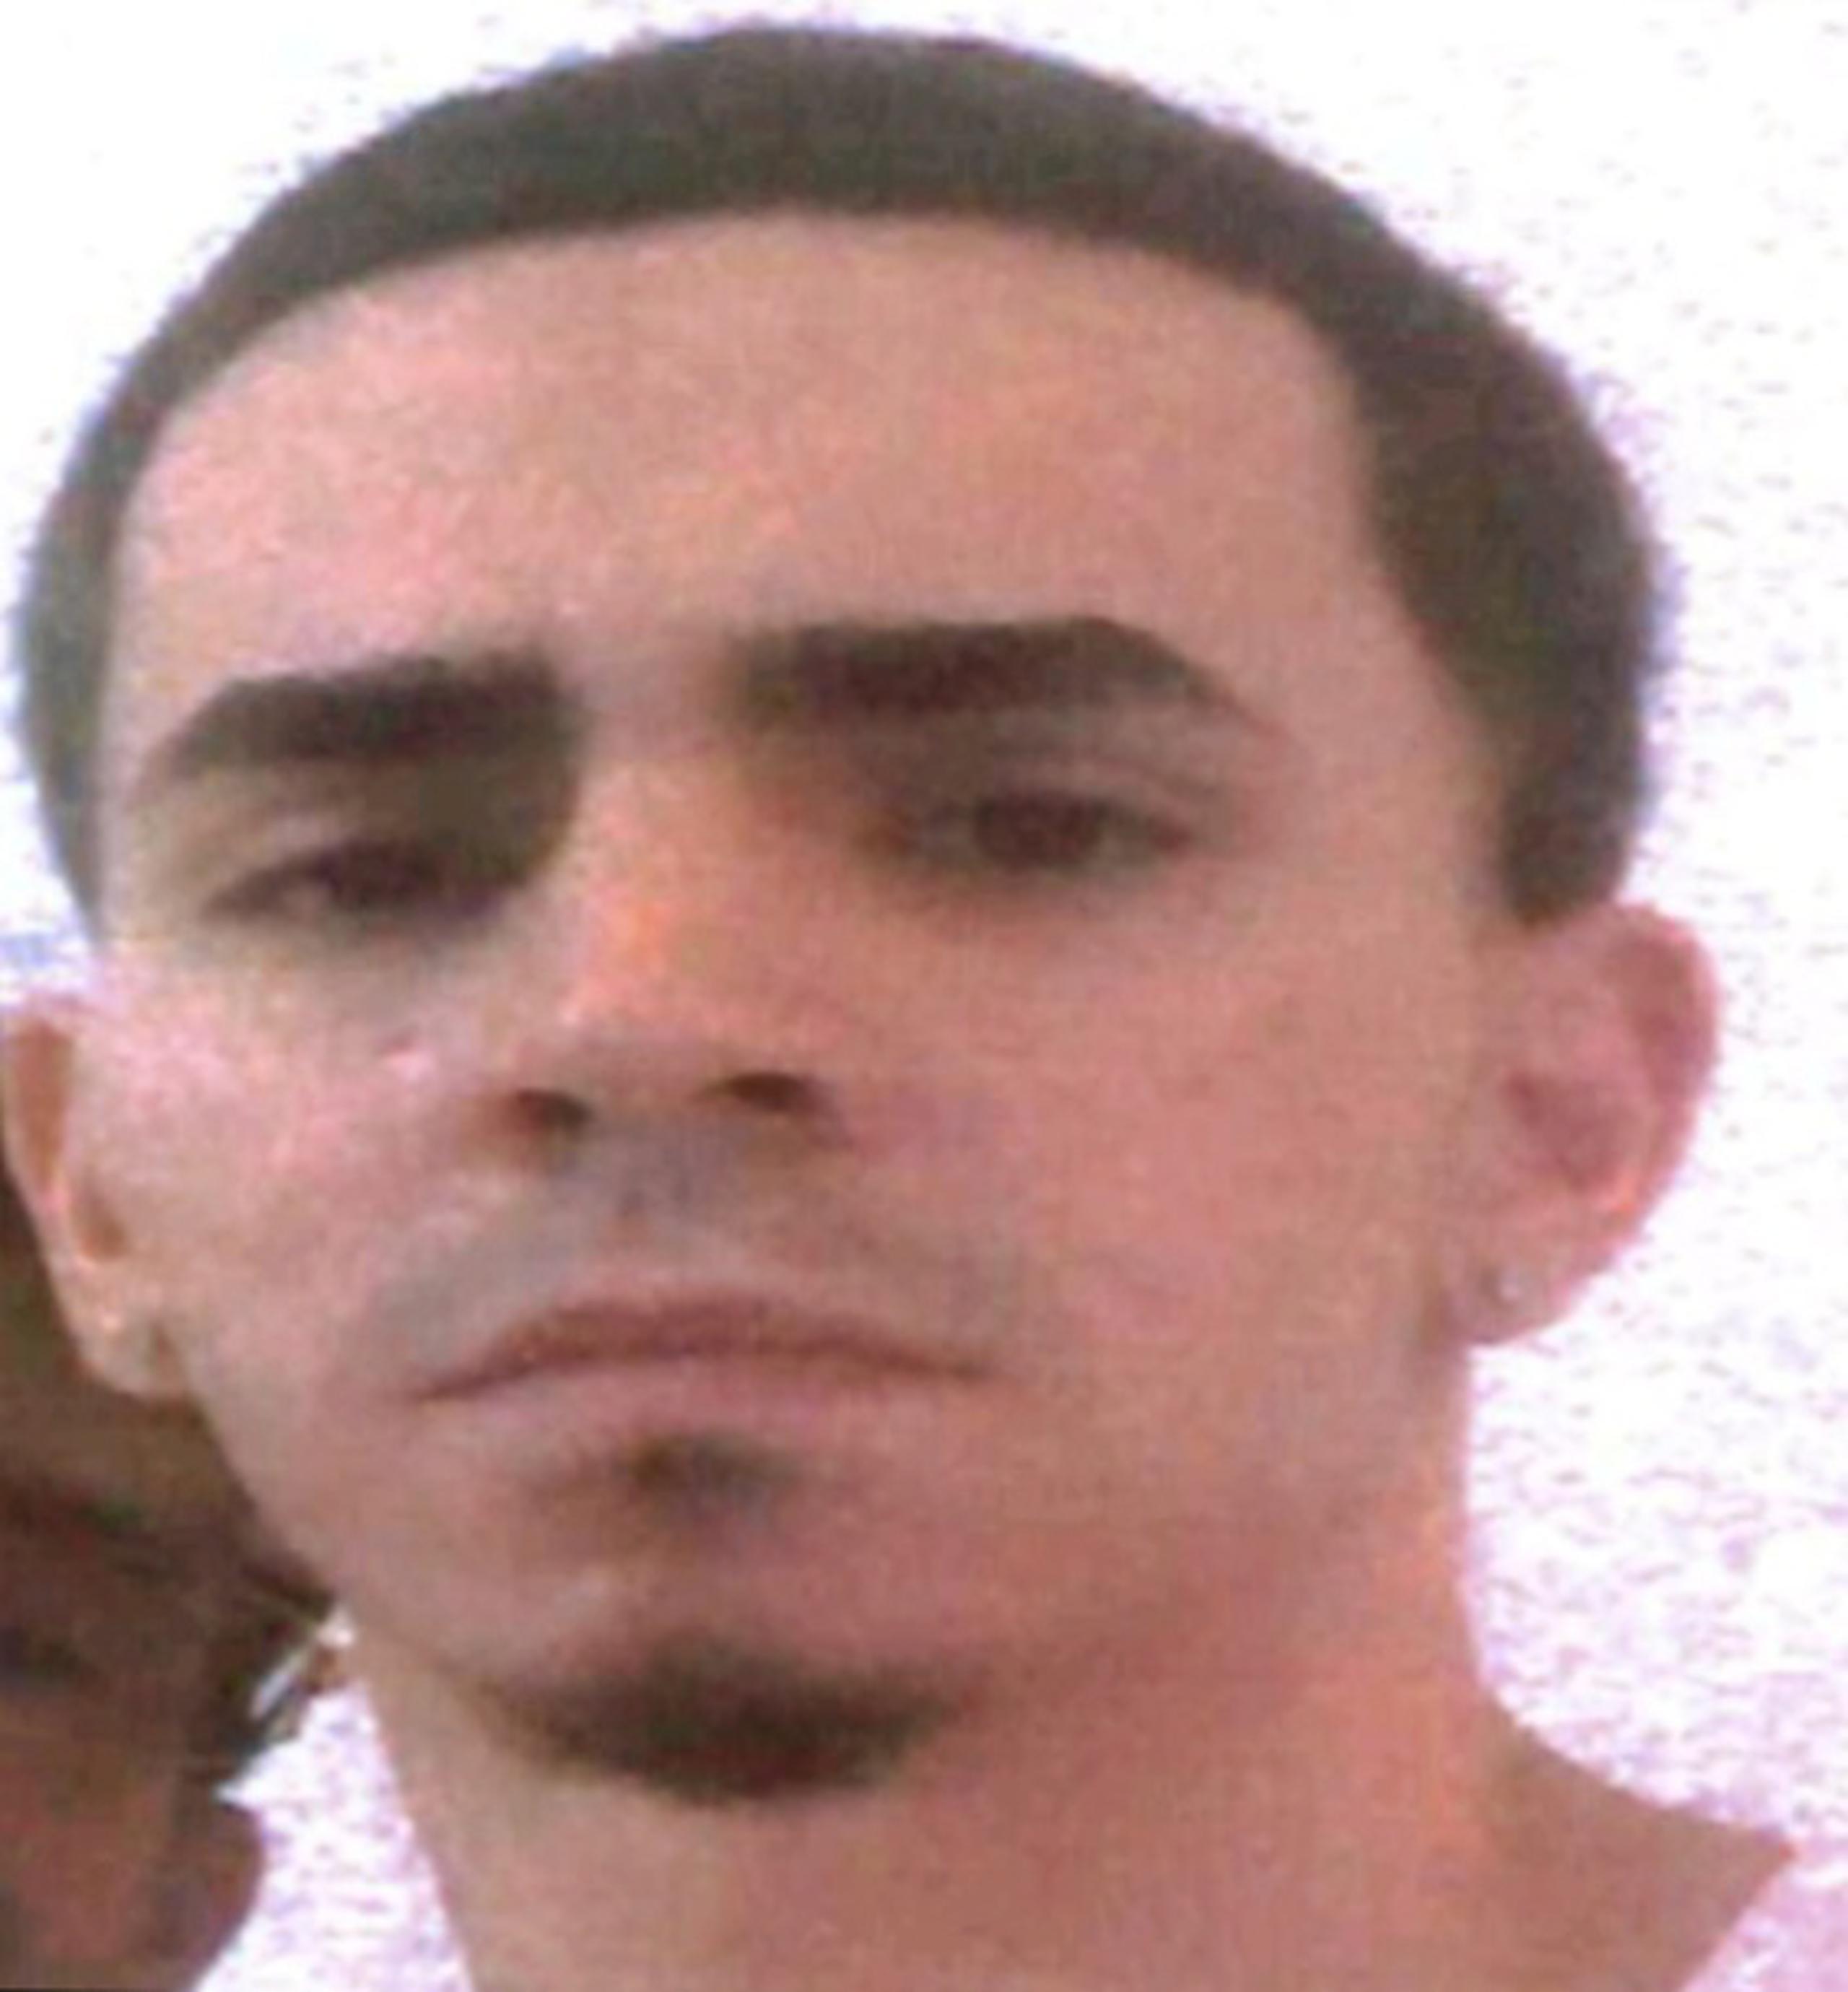 Anthony Méndez Espada de 20 años, se encuentra desaparecido desde el 15 de marzo cuando salió hacia la barriada Los Potes en Coamo y no regresó.